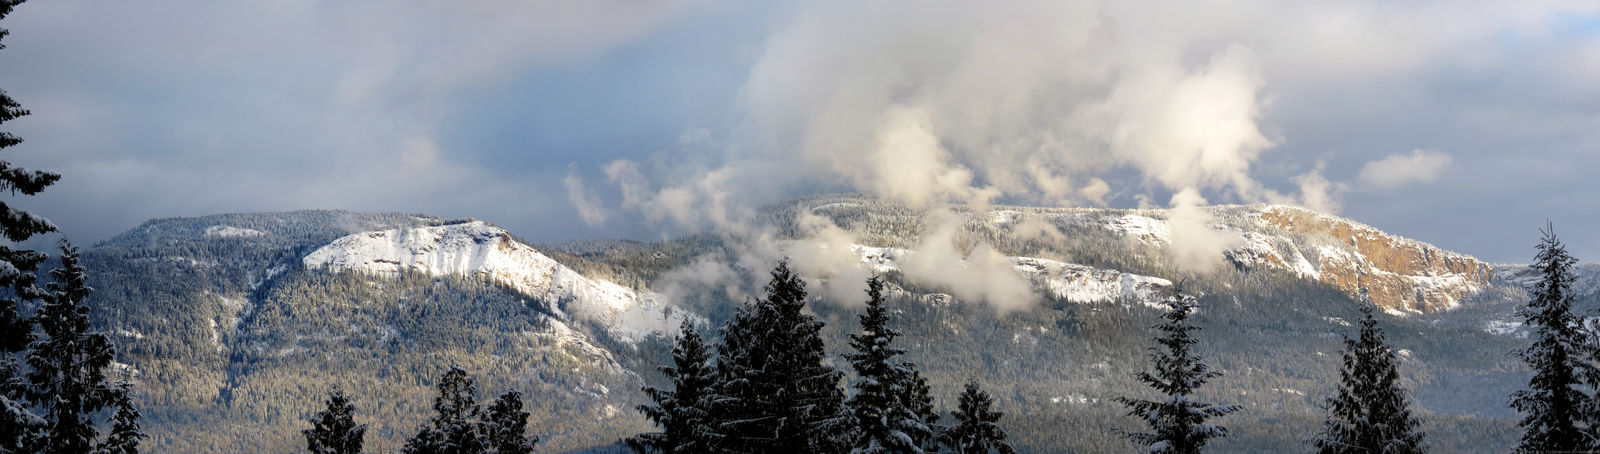 Snowy Mountains Panorama